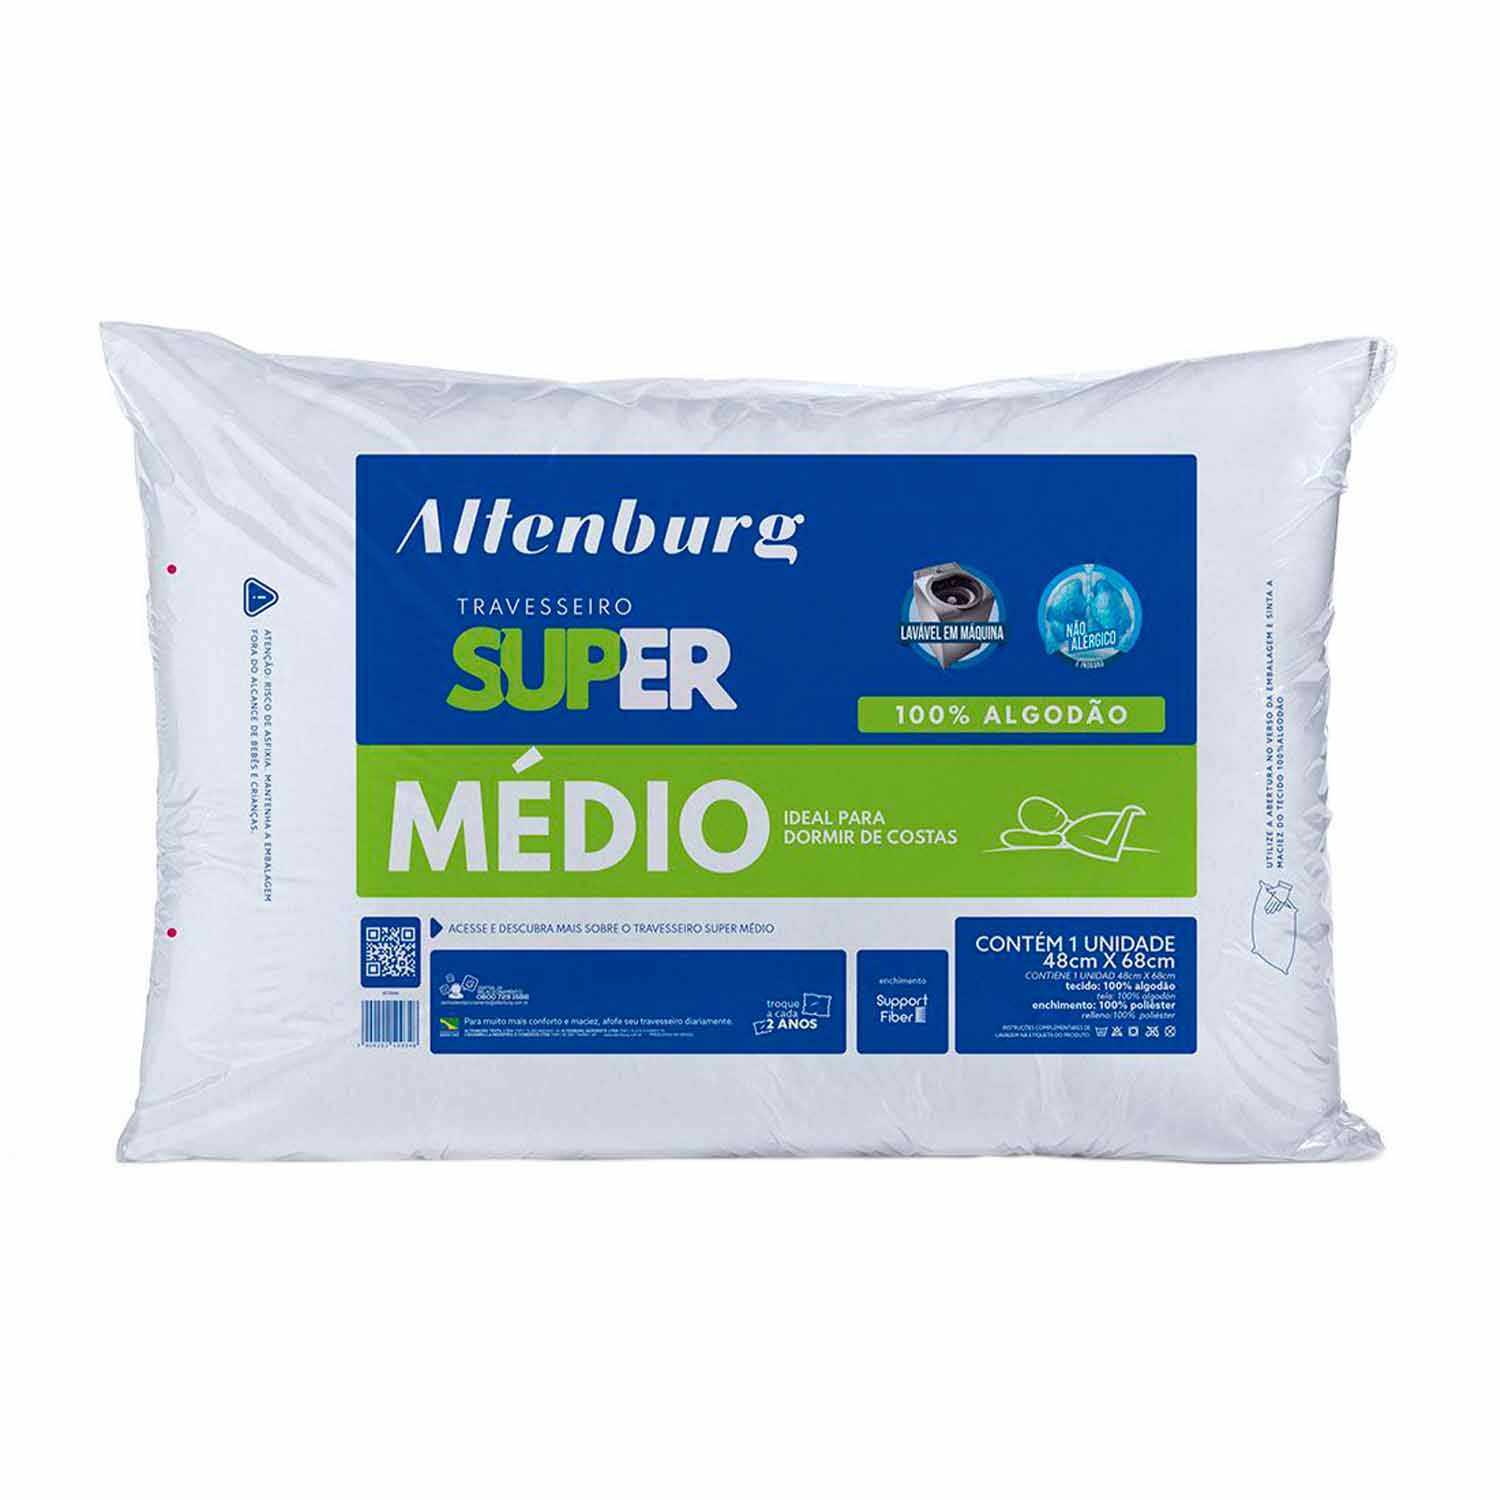 Almohada Altenburg Super Médio - 150 Hilos - 48cm x 68cm – Prime Brands